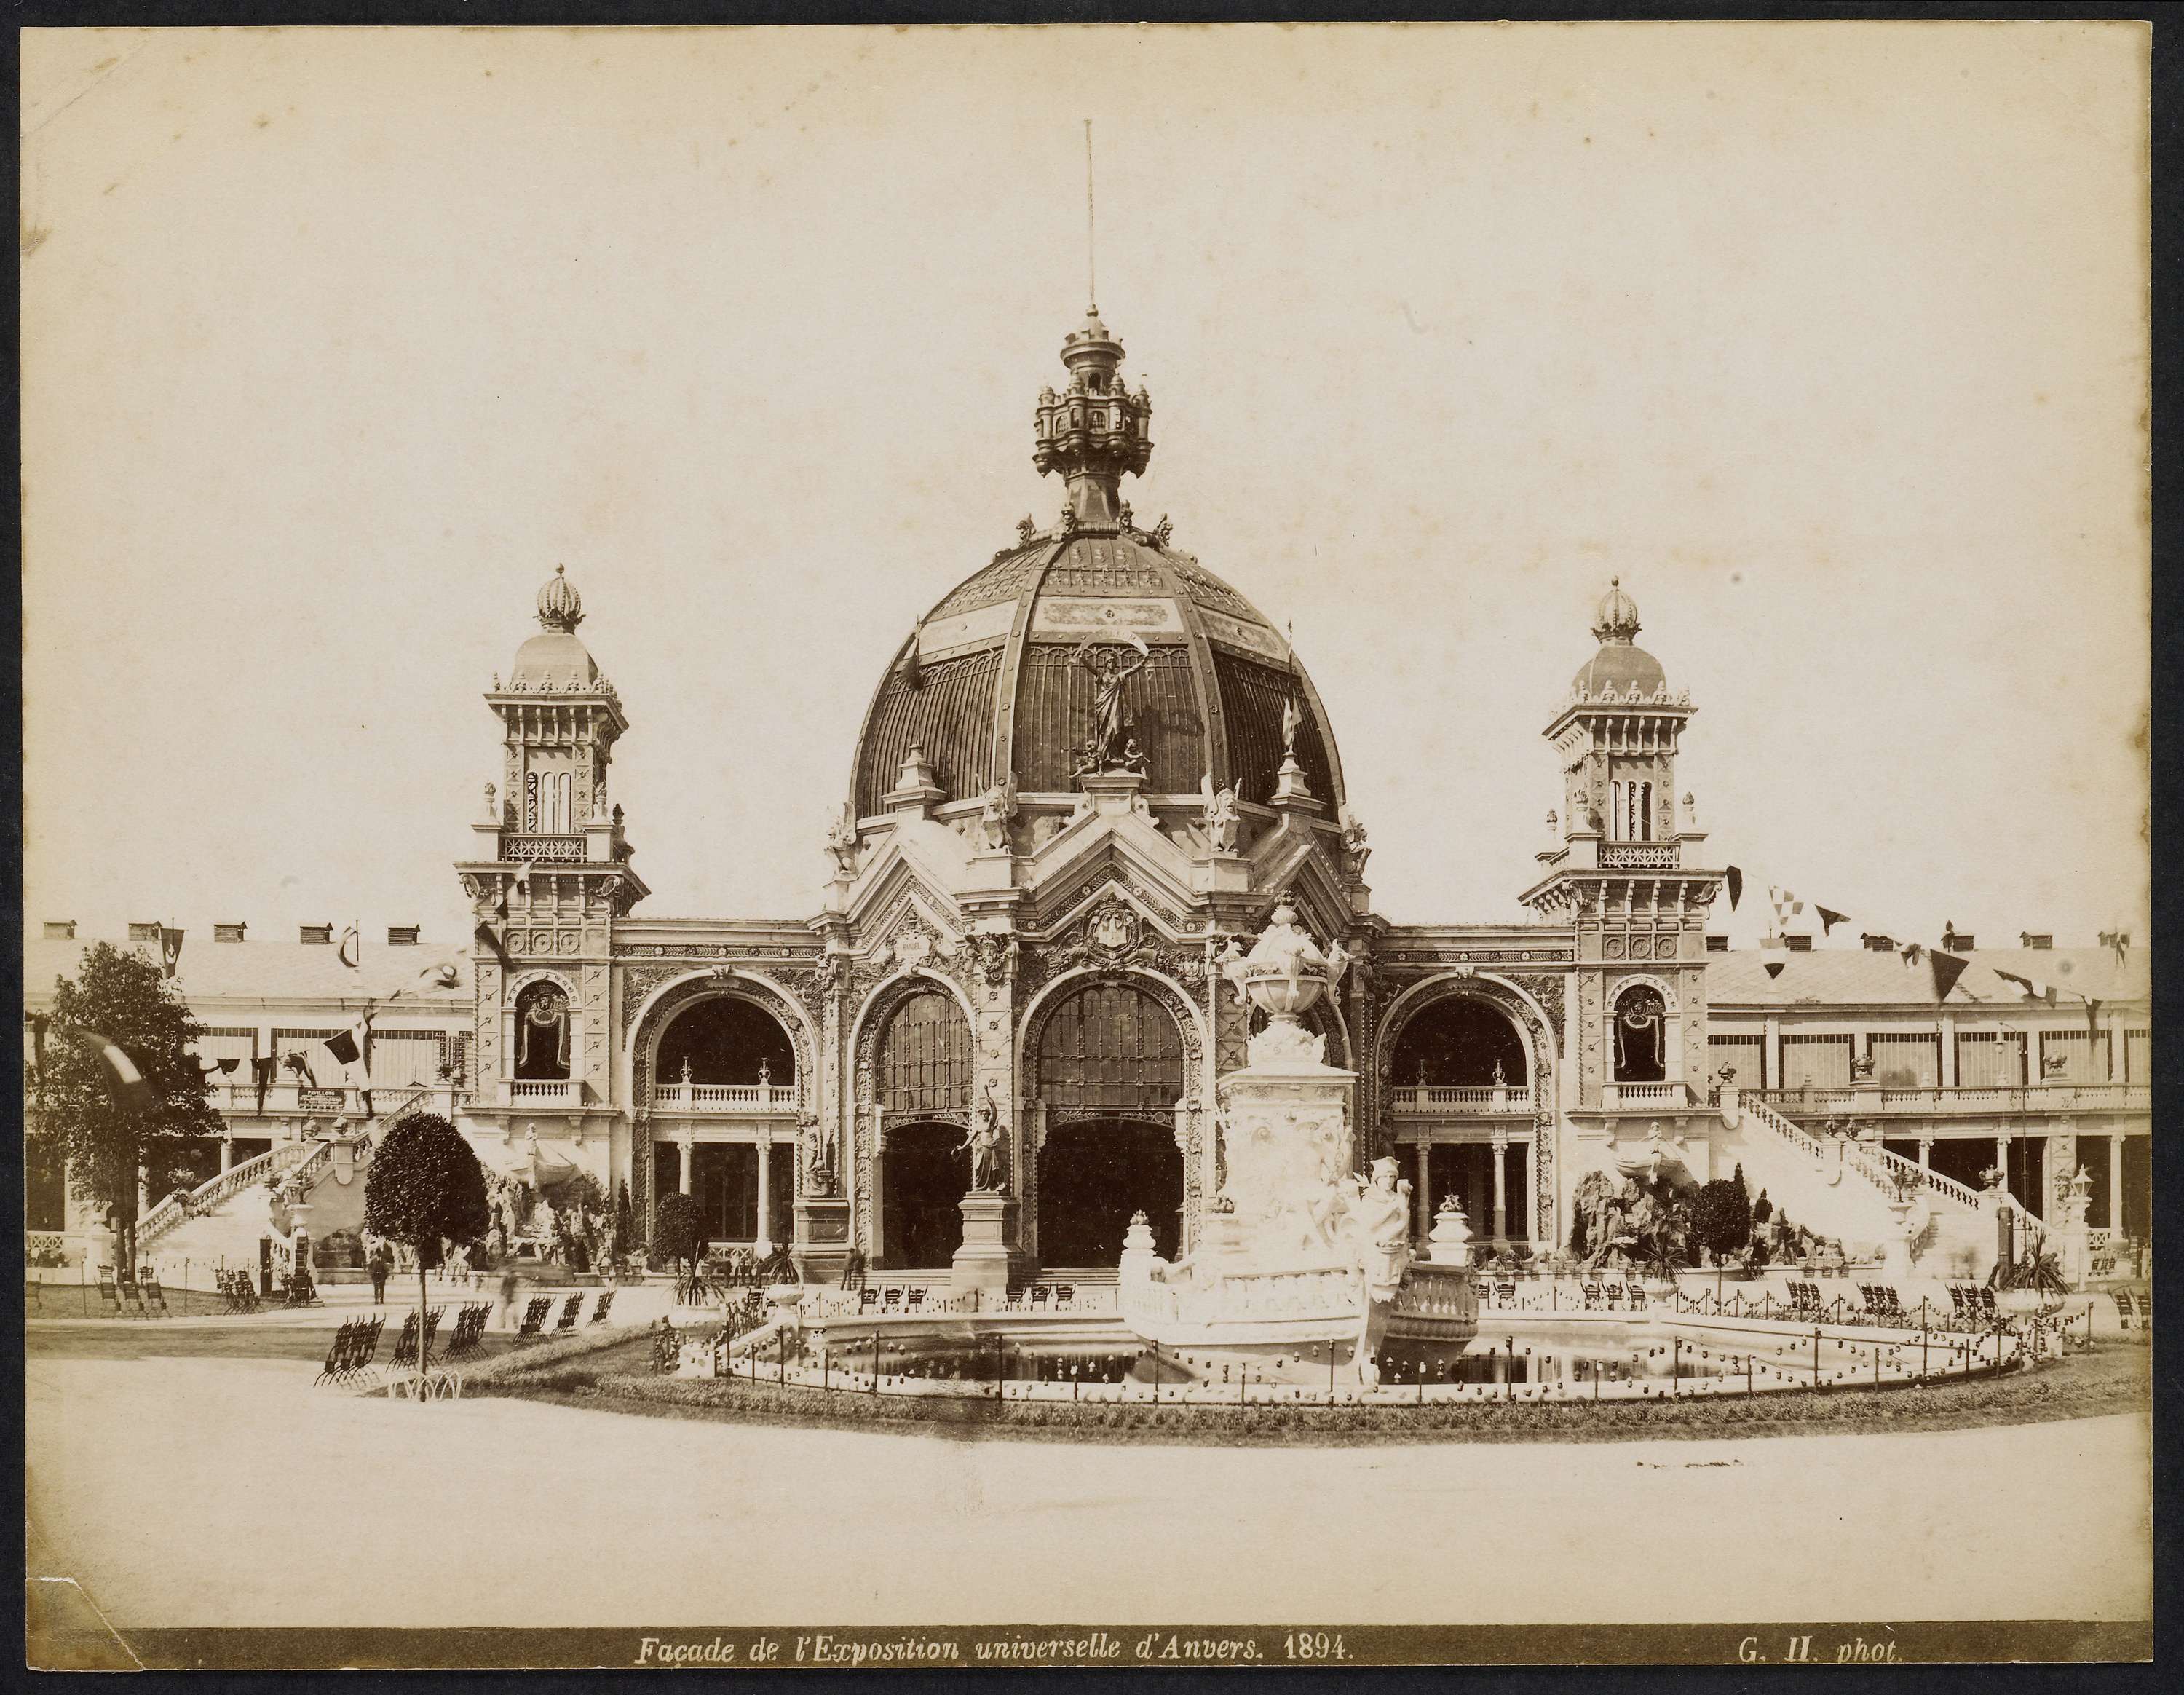 Gebouw ter gelegenheid van de Wereldtentoonstelling Antwerp, Facade de l'Exposition universallle d'Anvers,1894